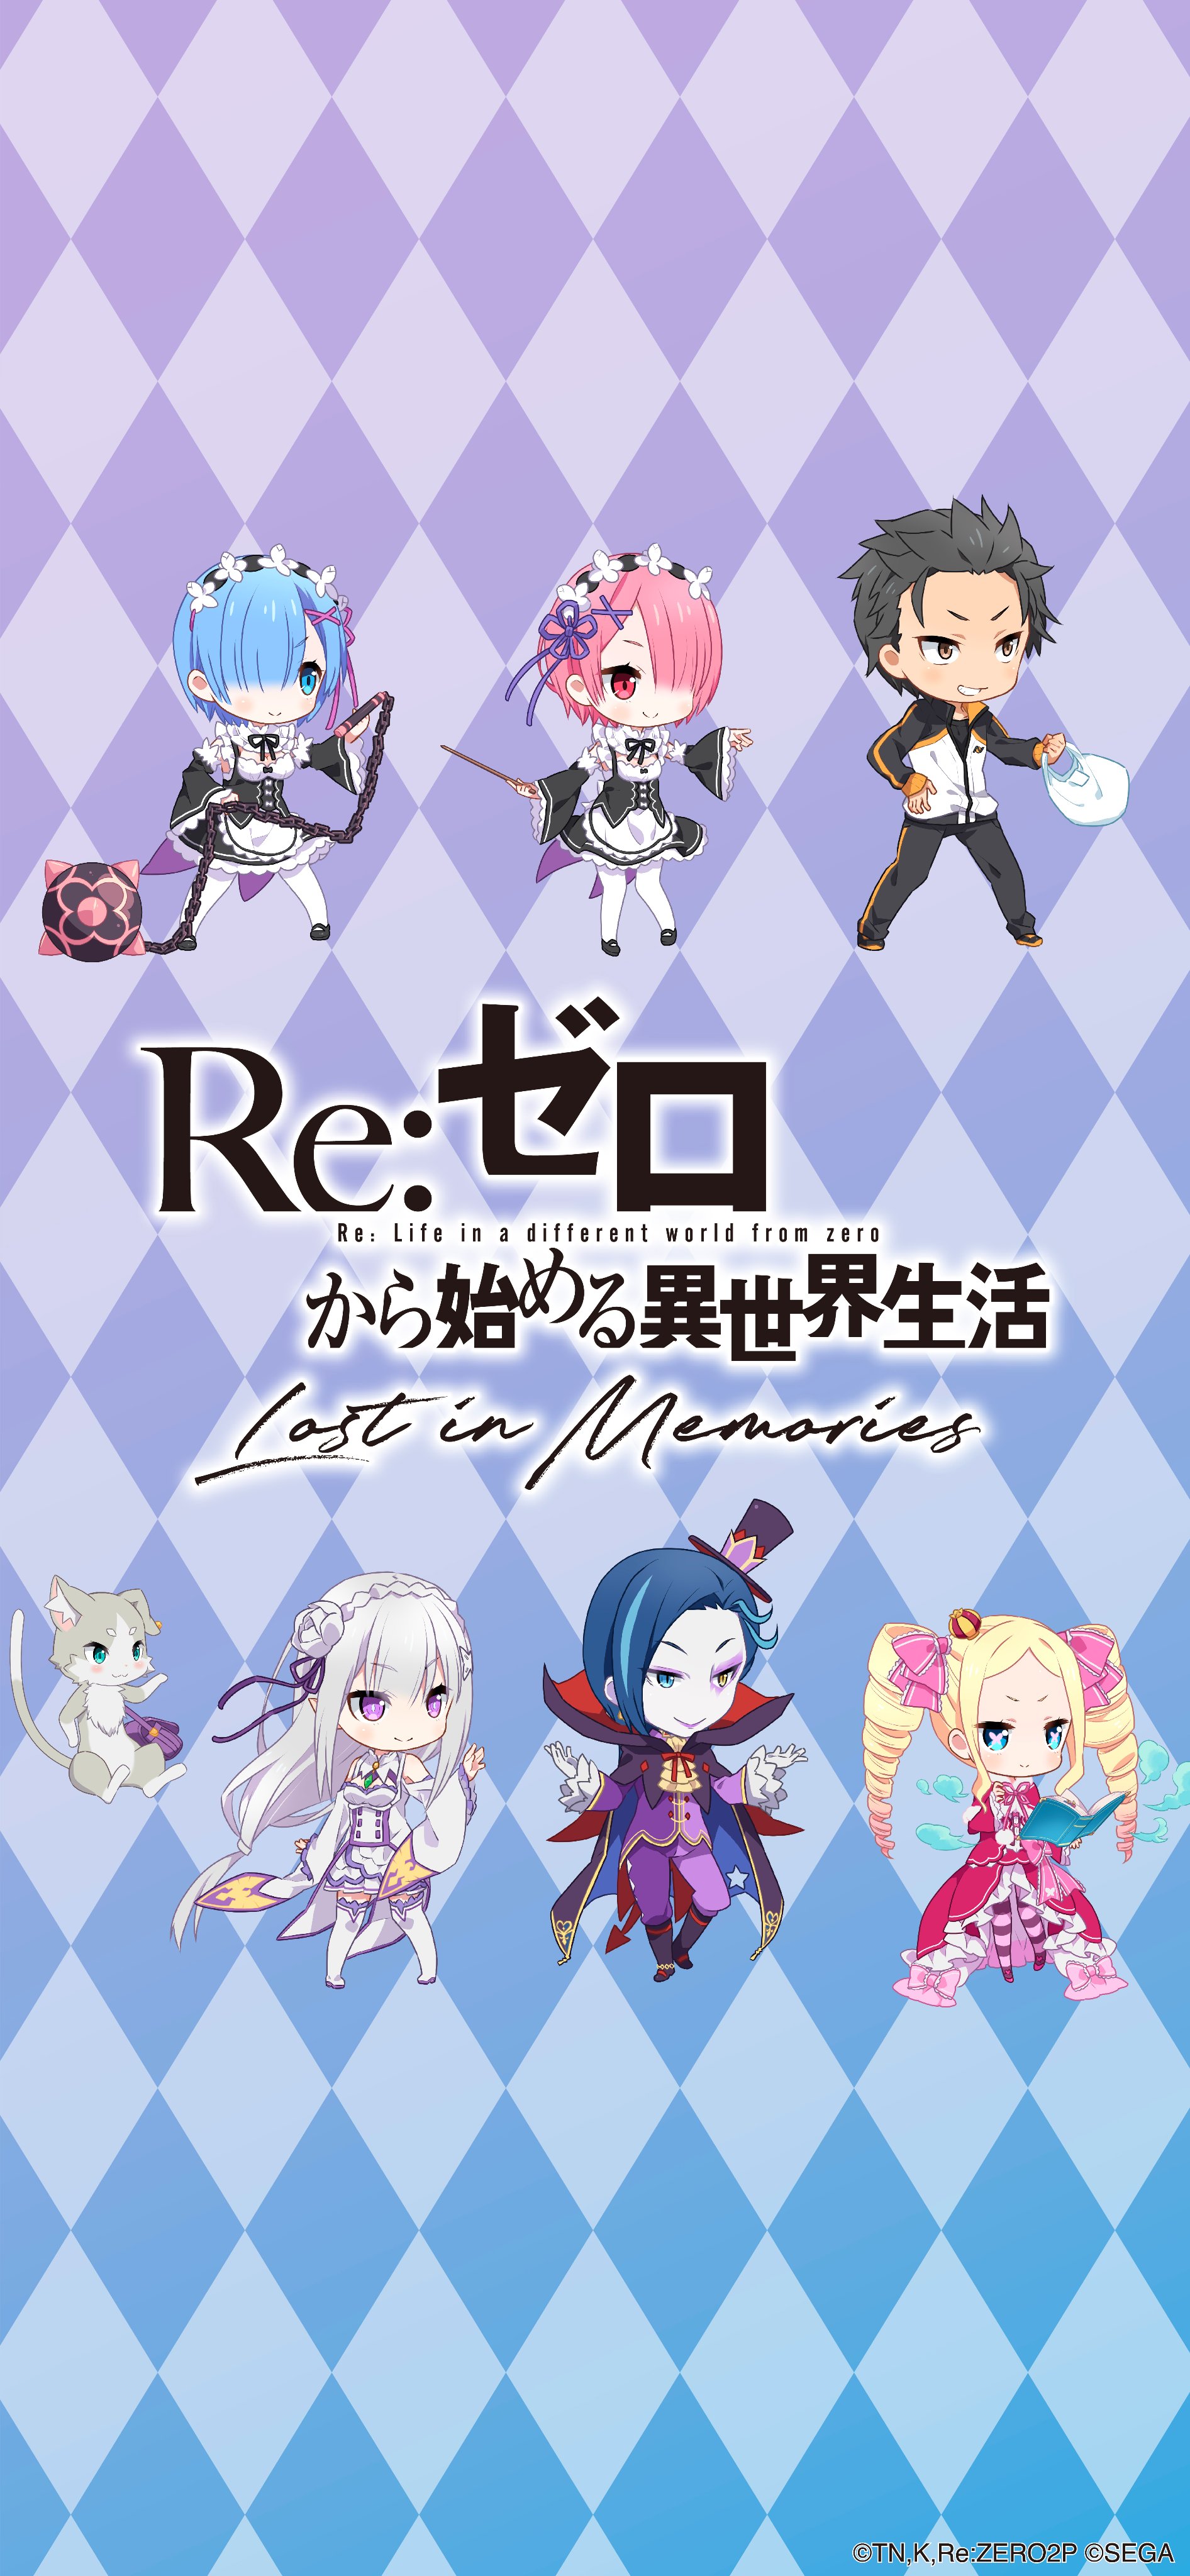 Re ゼロから始める異世界生活 Lost In Memories リゼロス 公式 Twitterren Twitter用アイコン リゼロス Rezero リゼロ T Co Wu8xgvlgge Twitter